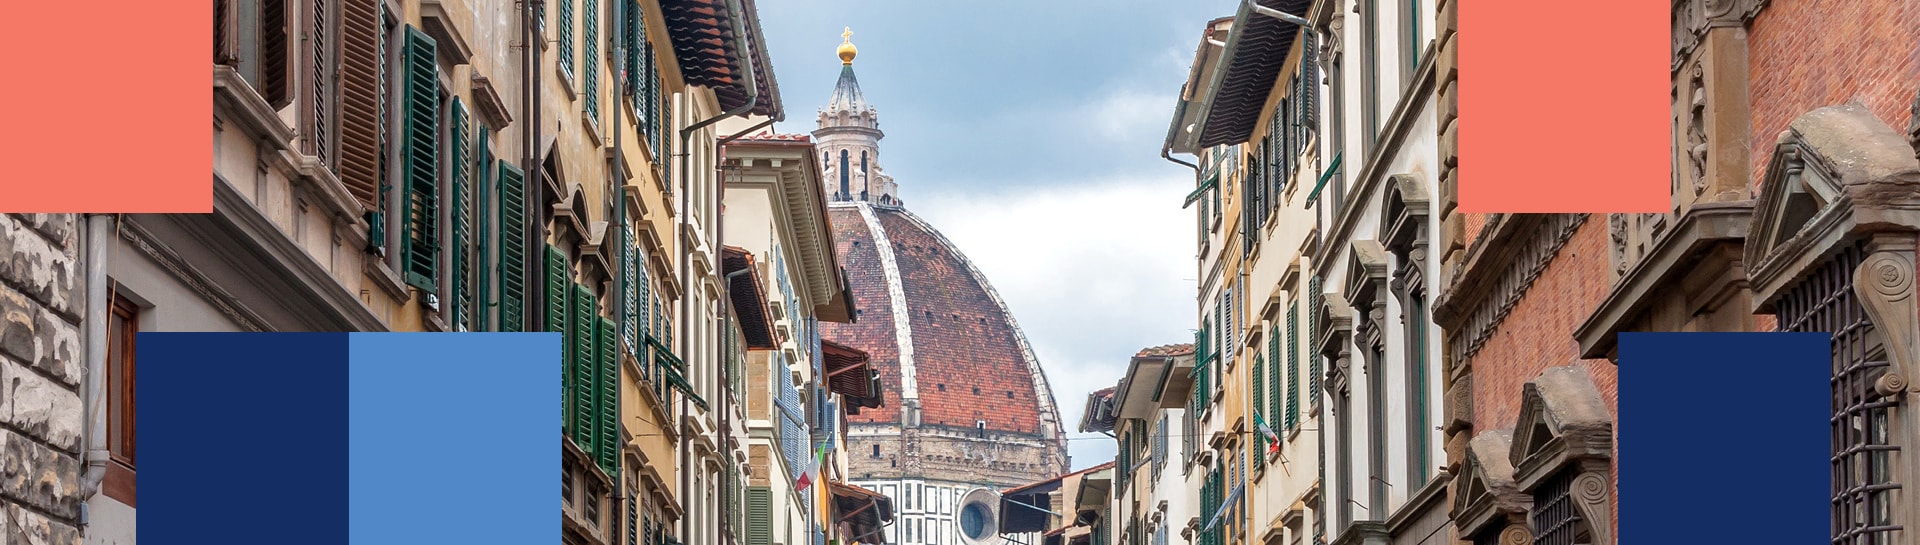 Vista da Cúpula de Brunelleschi de uma rua de Florença